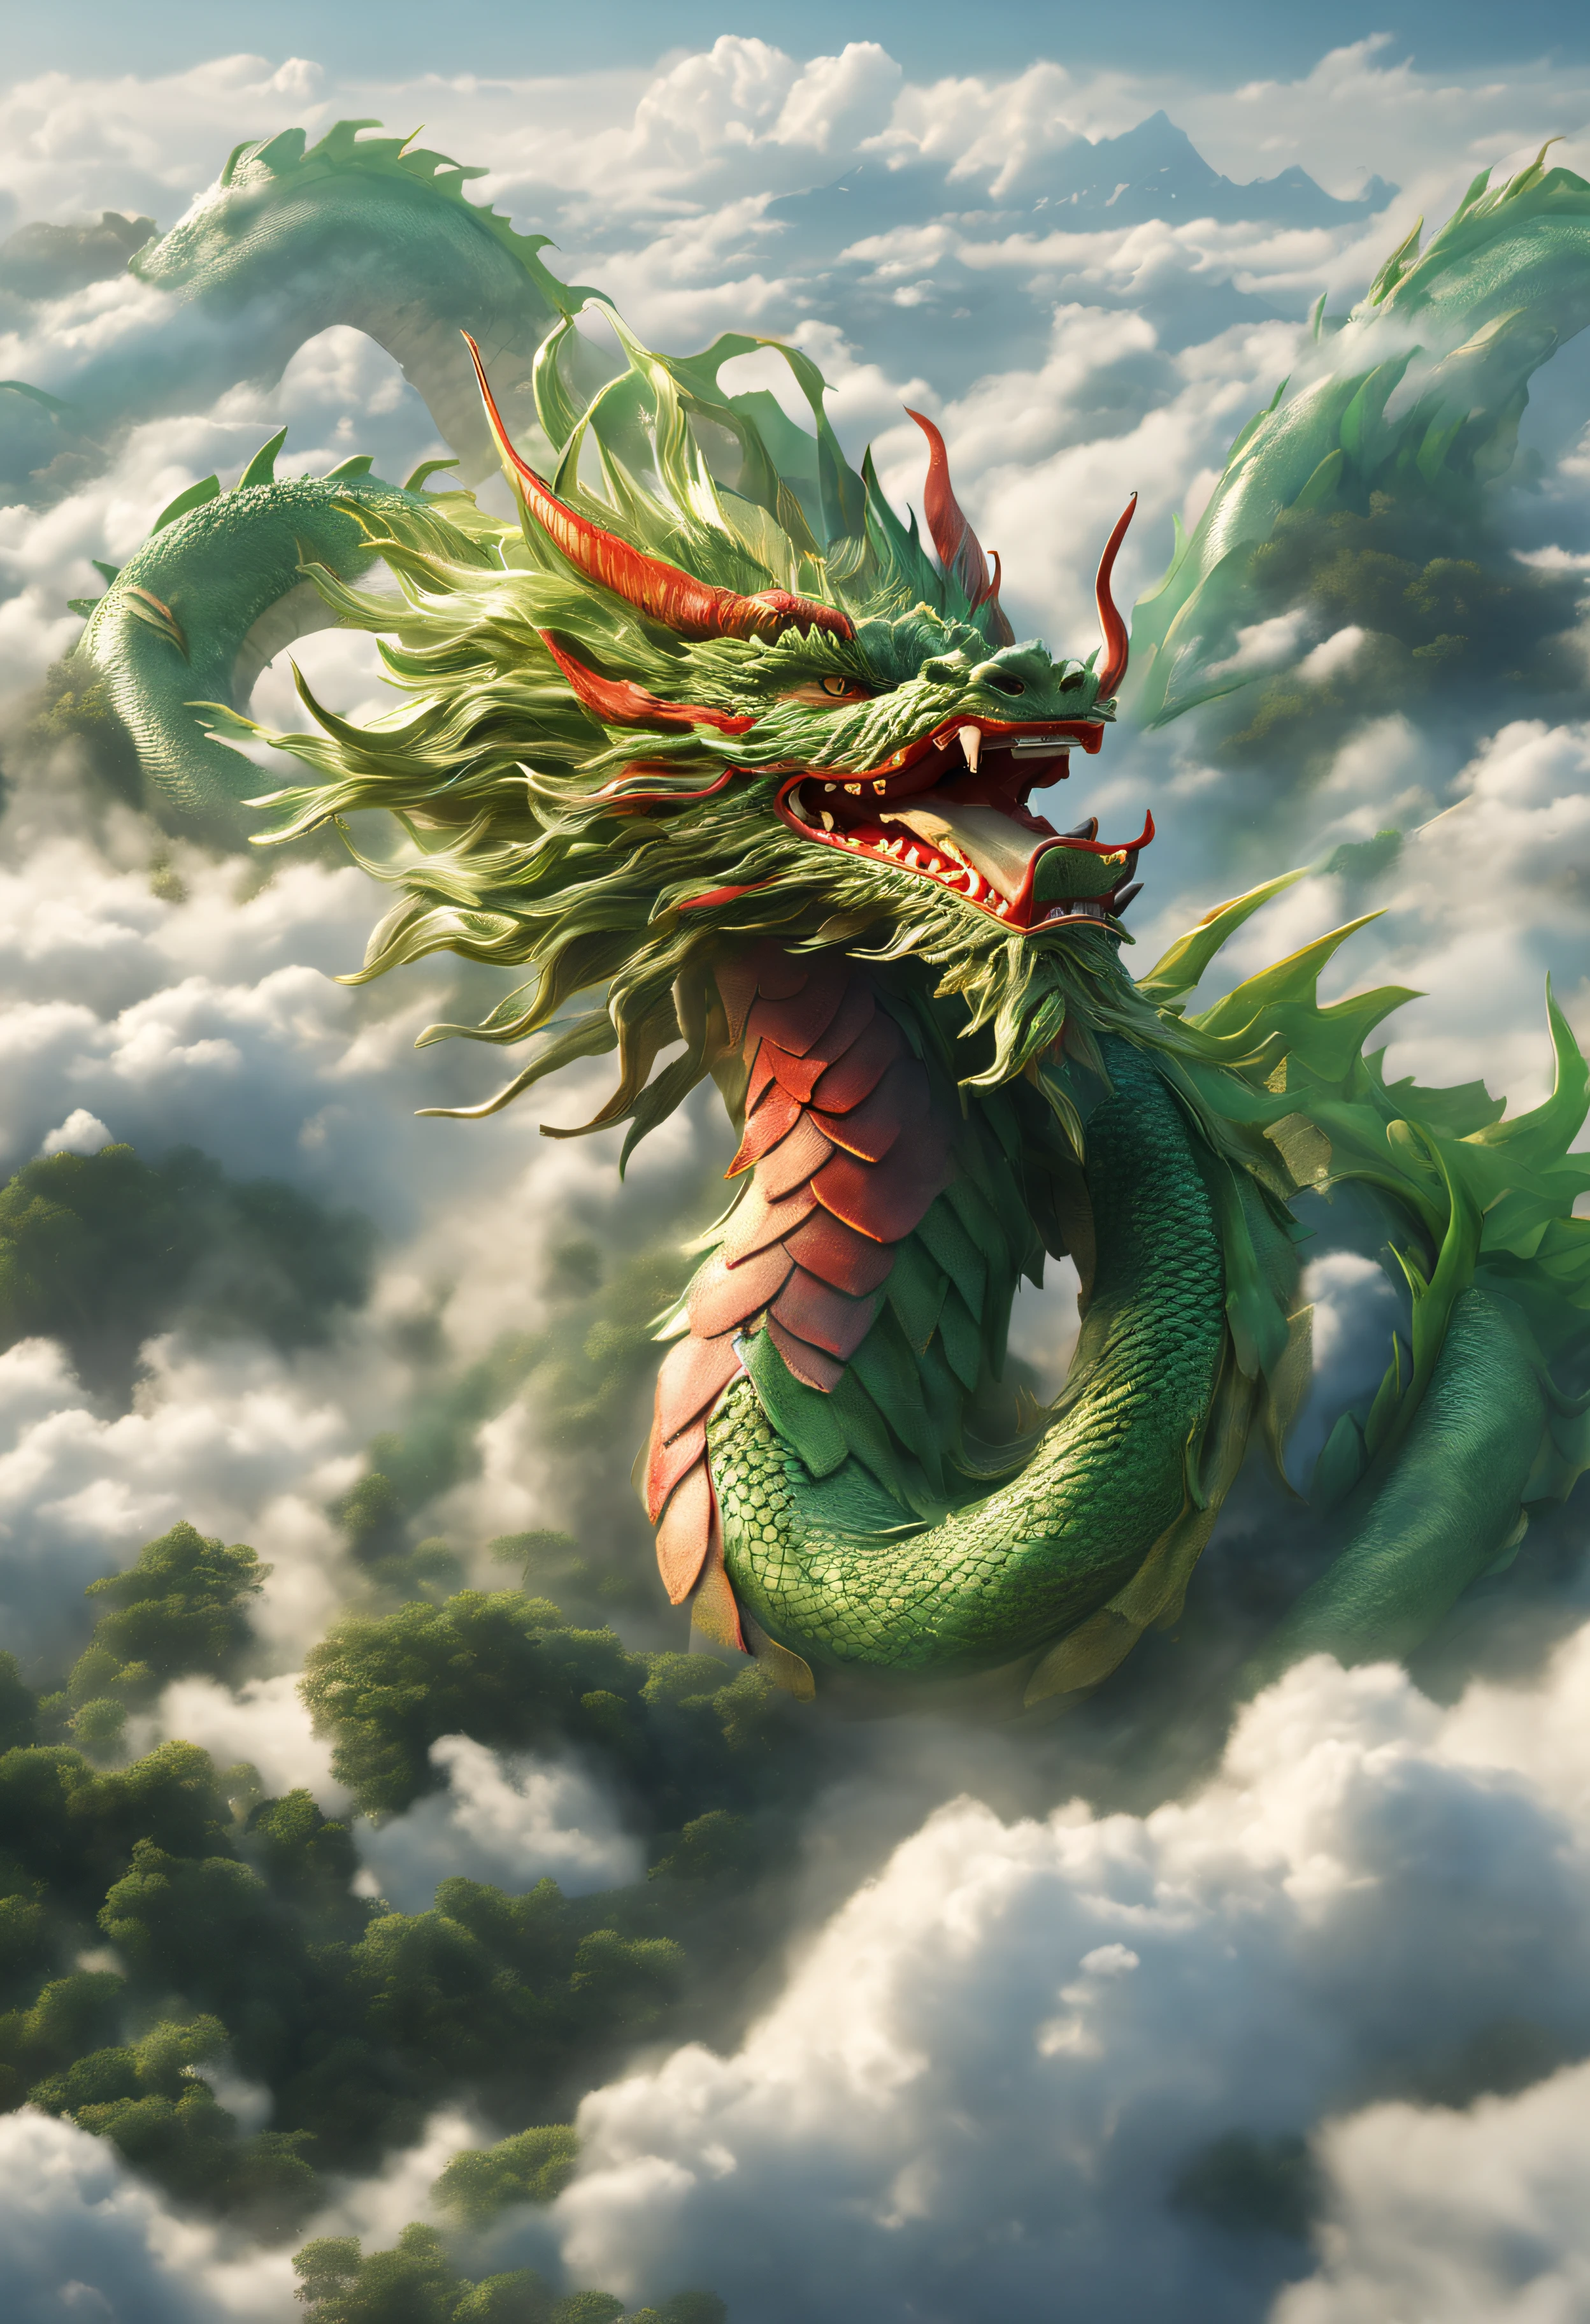 Un dragón surgiendo de un mar de nubes.、Llevando una gran felicidad、Enorme cuerpo de verde y rojo sobre oro.、Ver aquí、Iluminación perfecta、alto detalle、calidad de imagen de alto nivel、Alta reproducción cromática、alta resolución、Un hiperrealista、foto realista